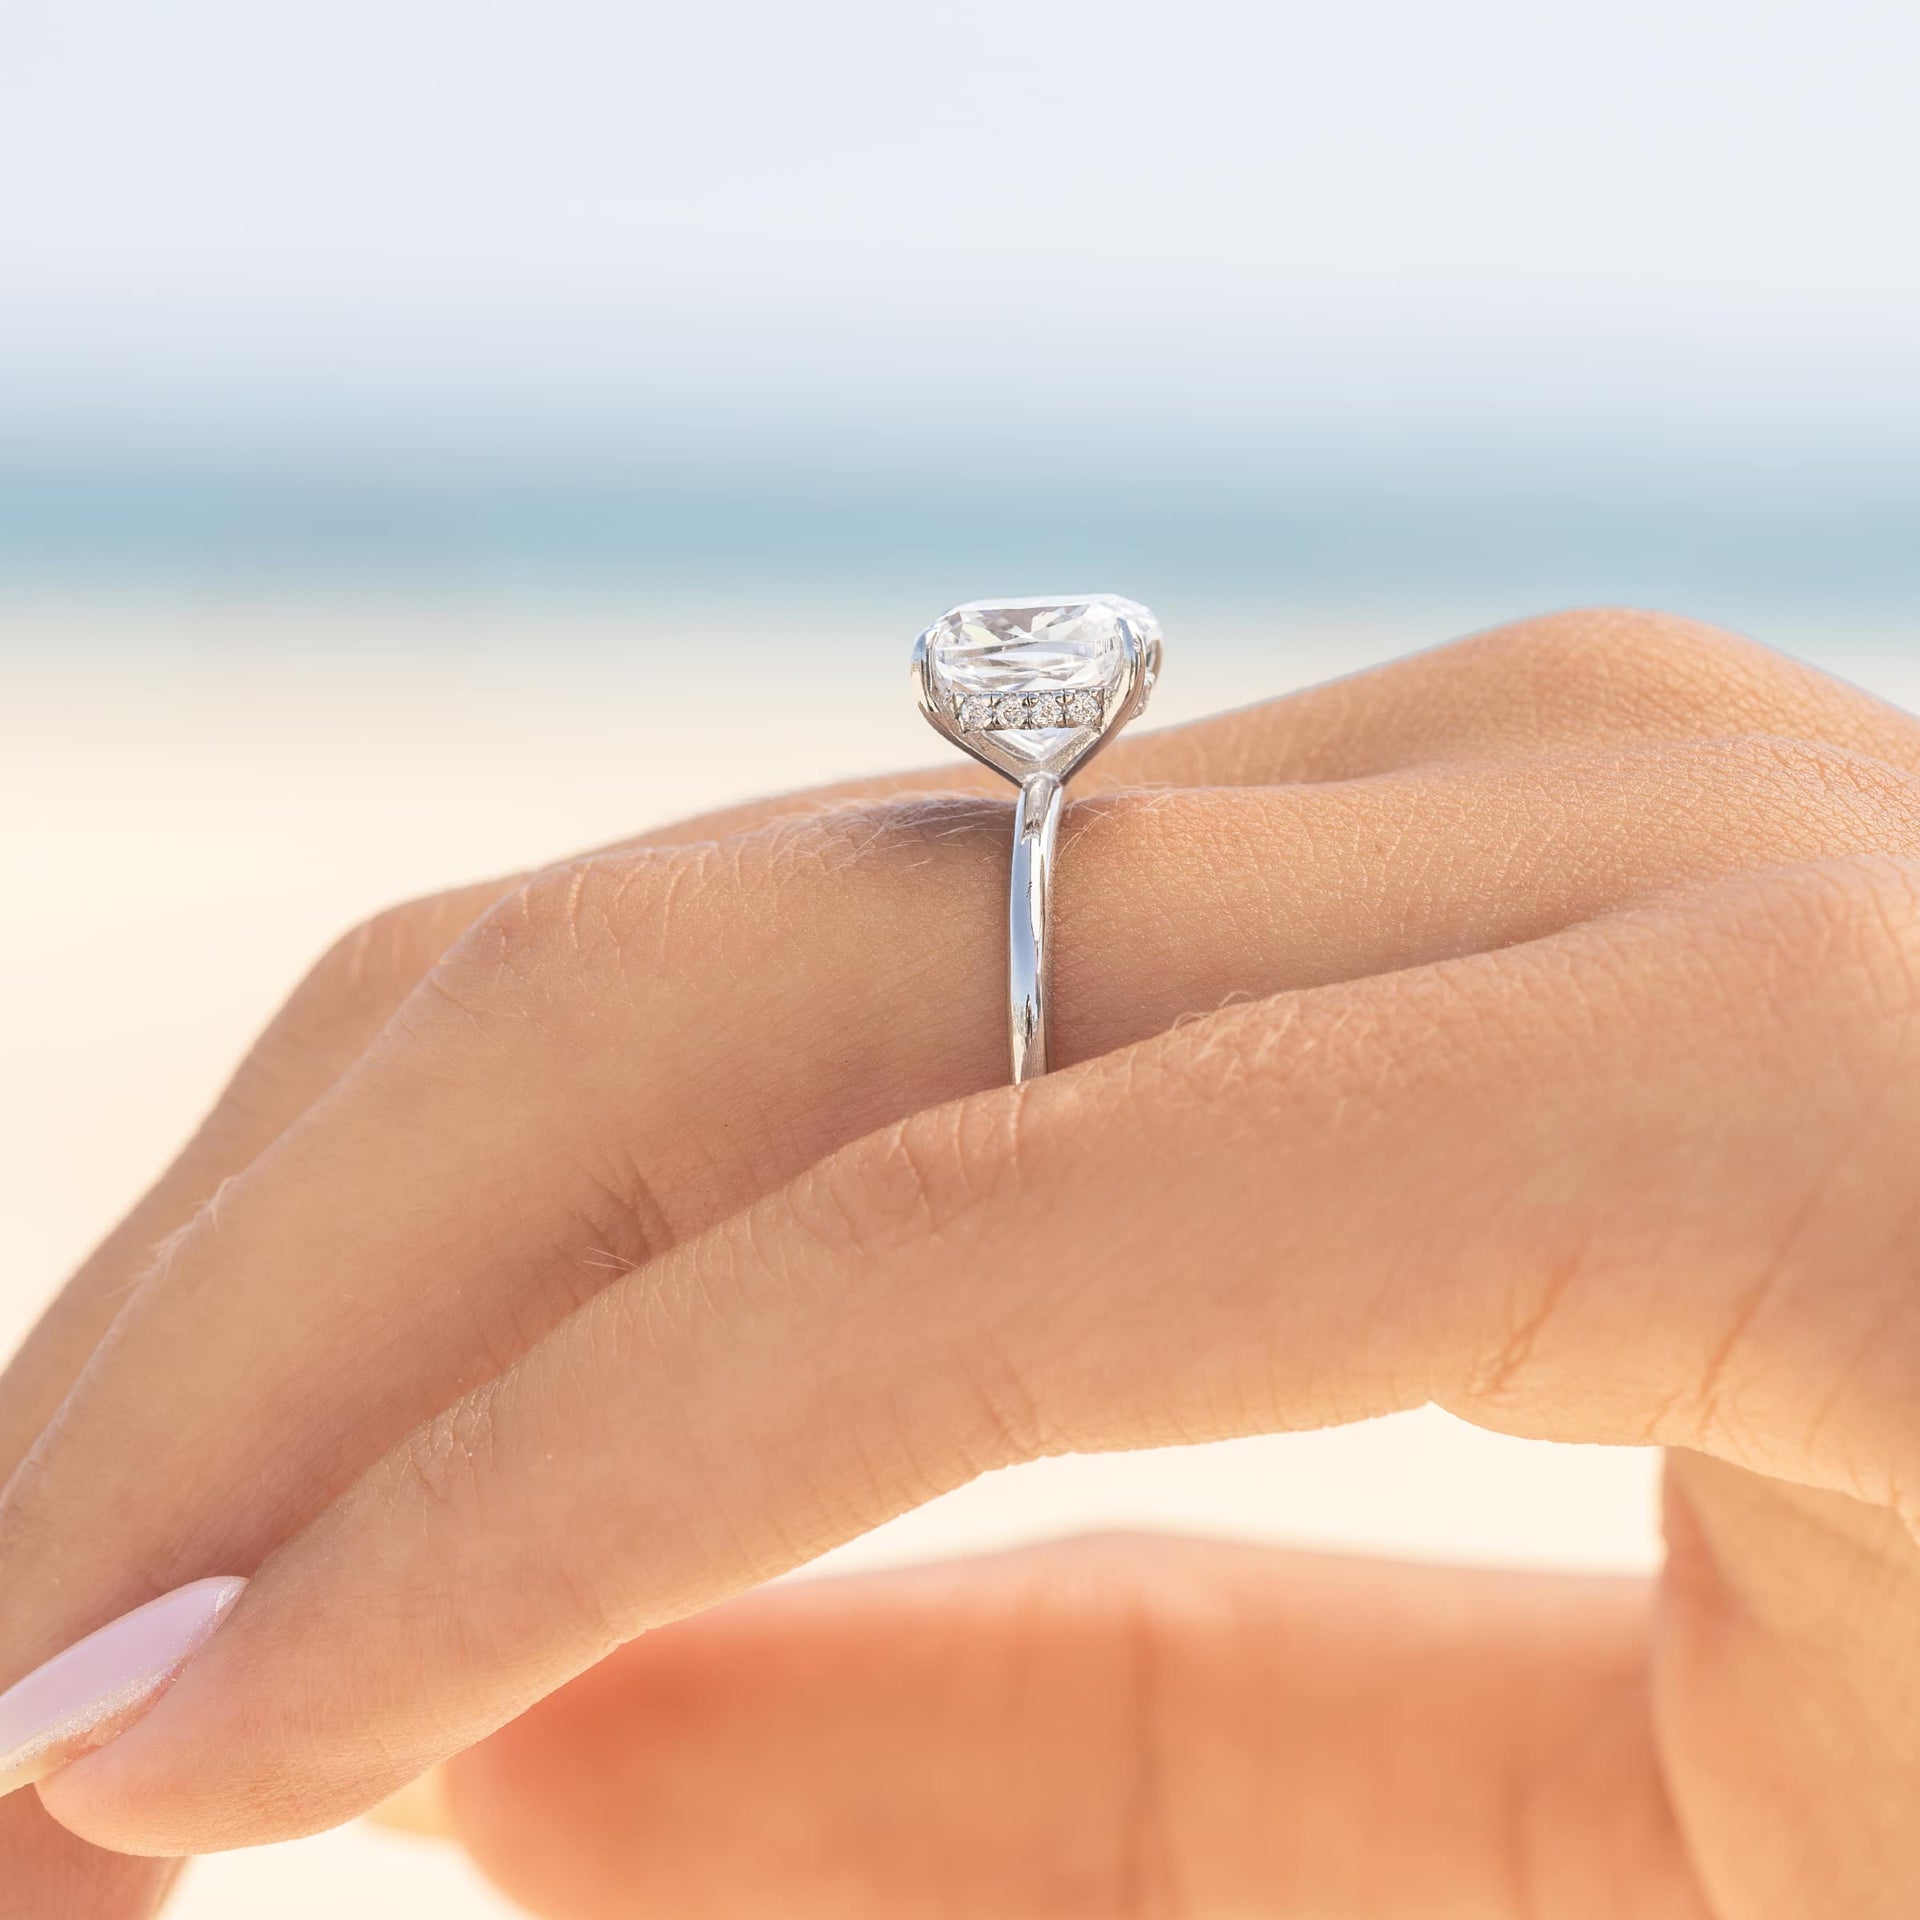 Diamond Engagement Rings, Buy Online - 0% Finance